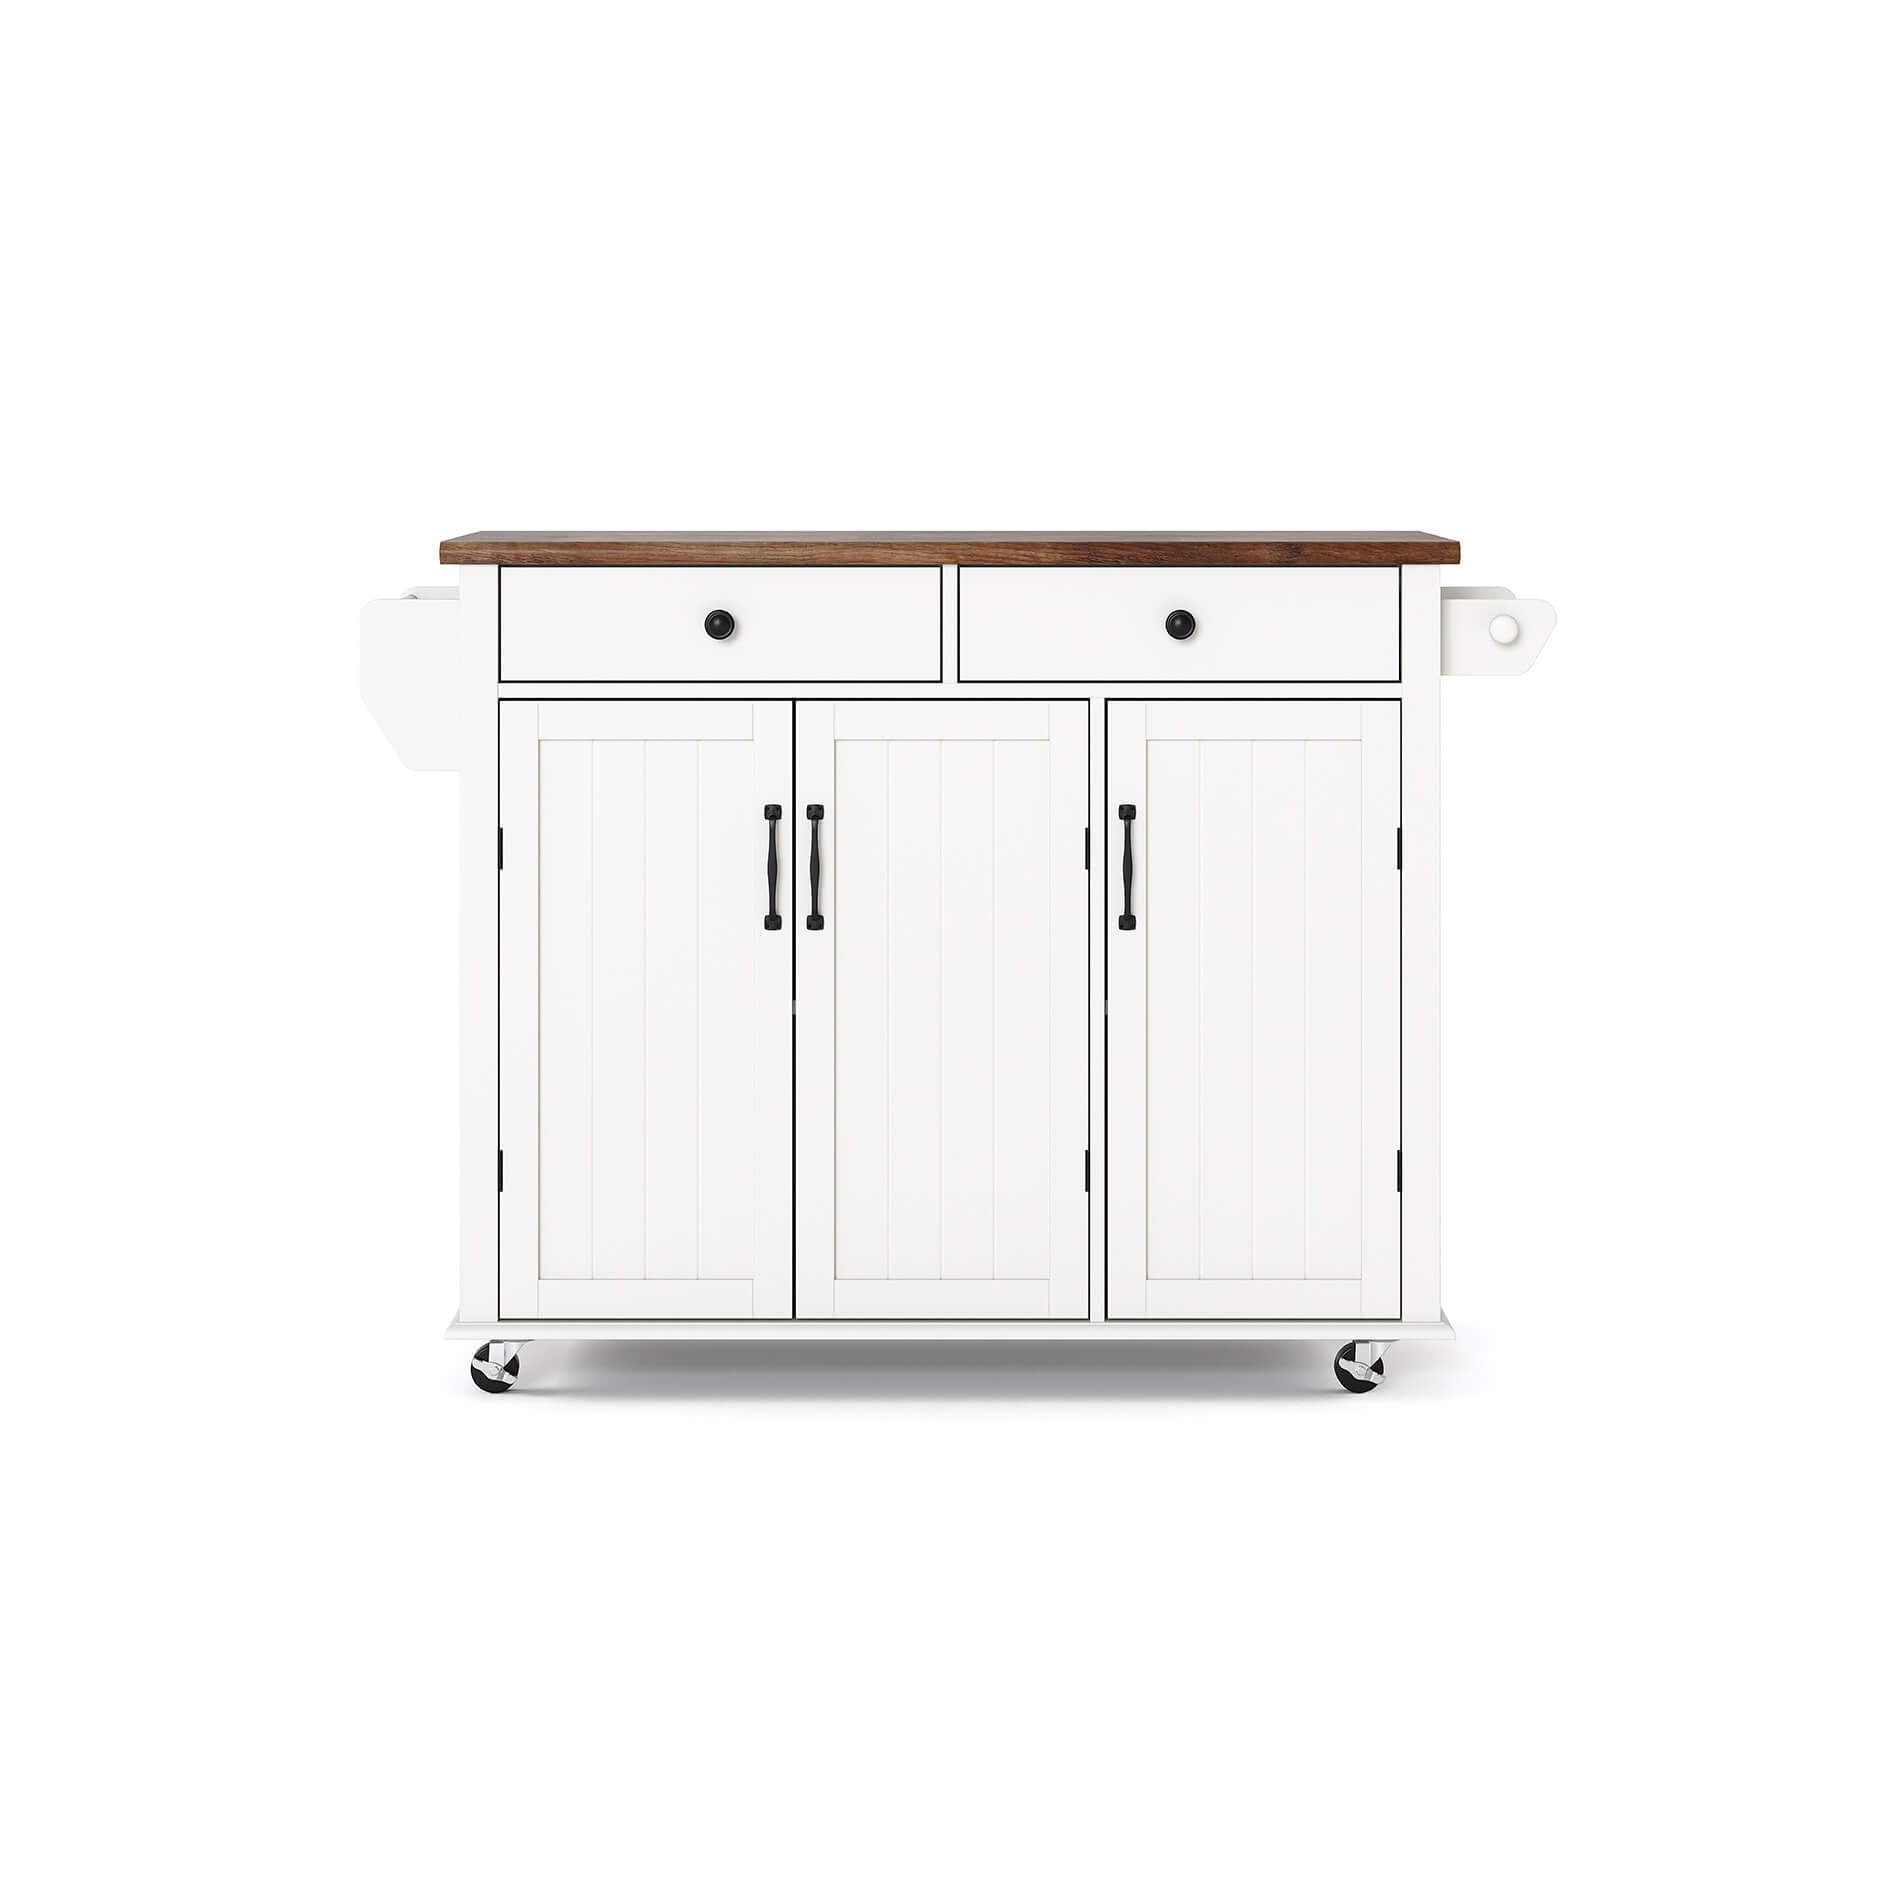 WAMPAT 49" Kitchen Island with Drawer & Storage Cabinet, White